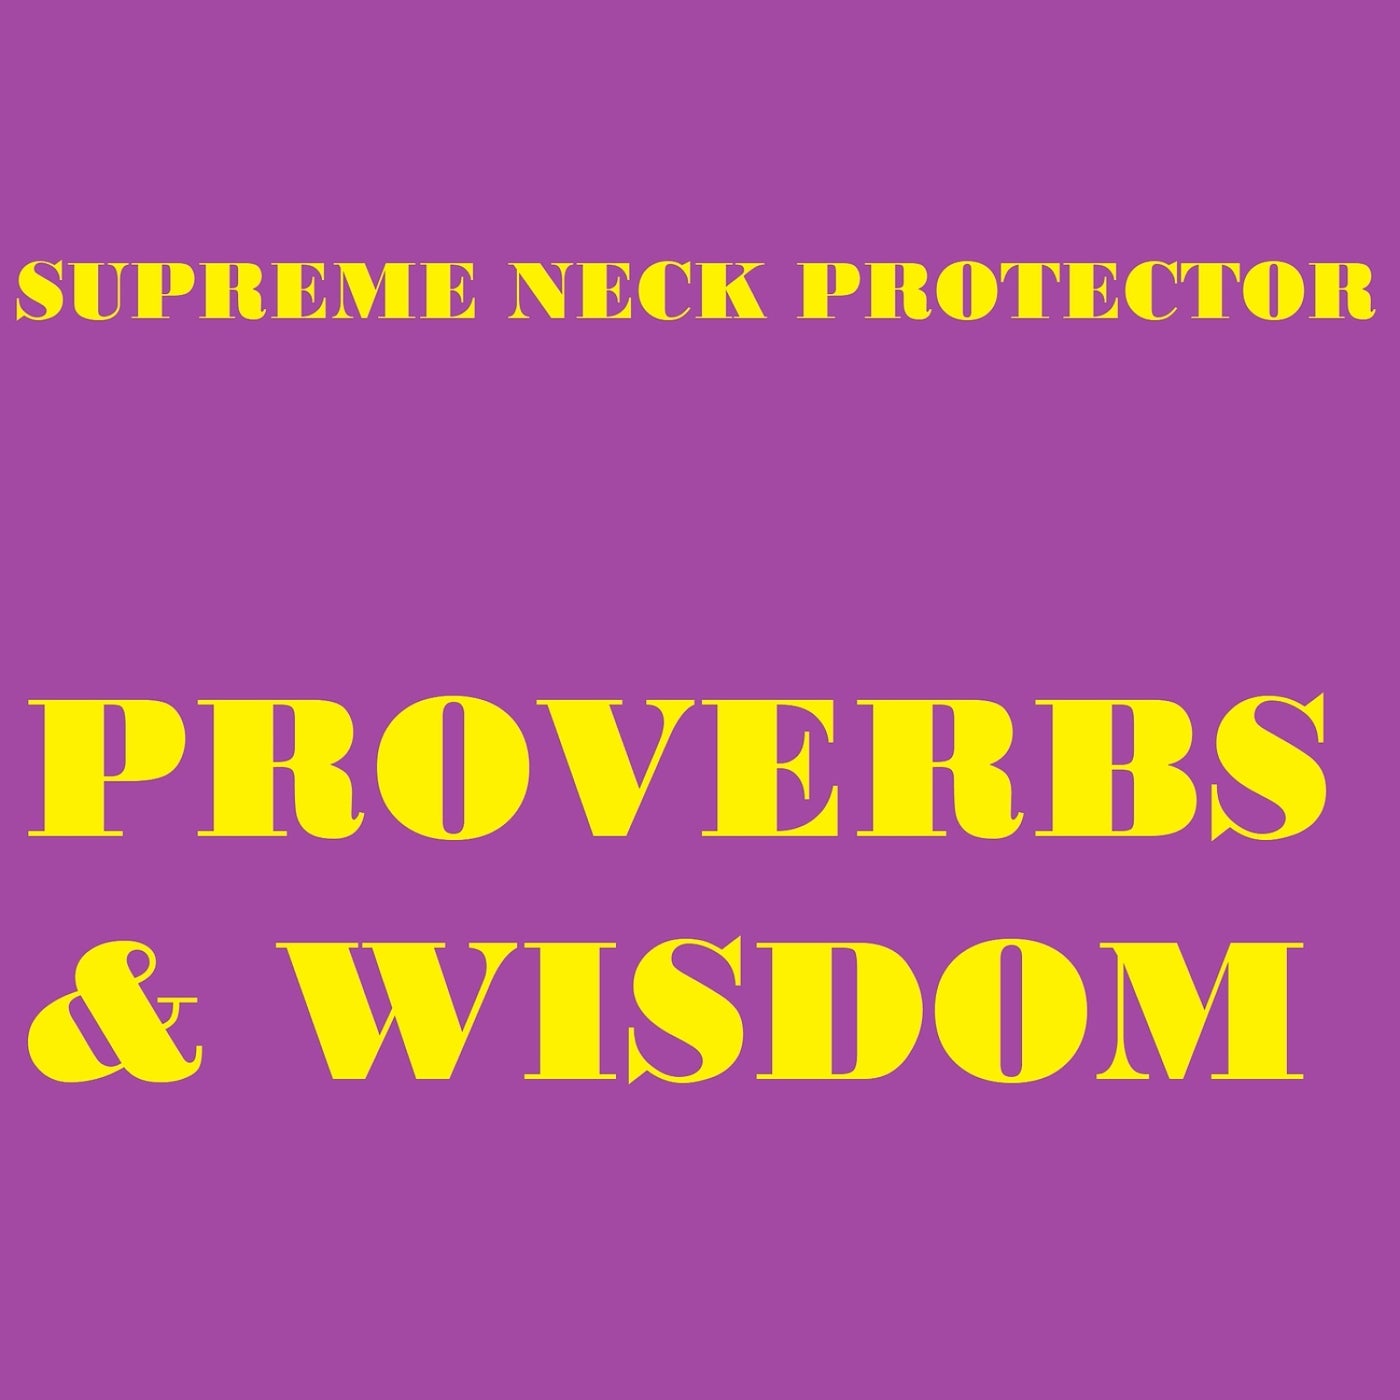 Supreme Neck Protector - Genesis 1 (Original Mix) [TuneCore] | Music ...